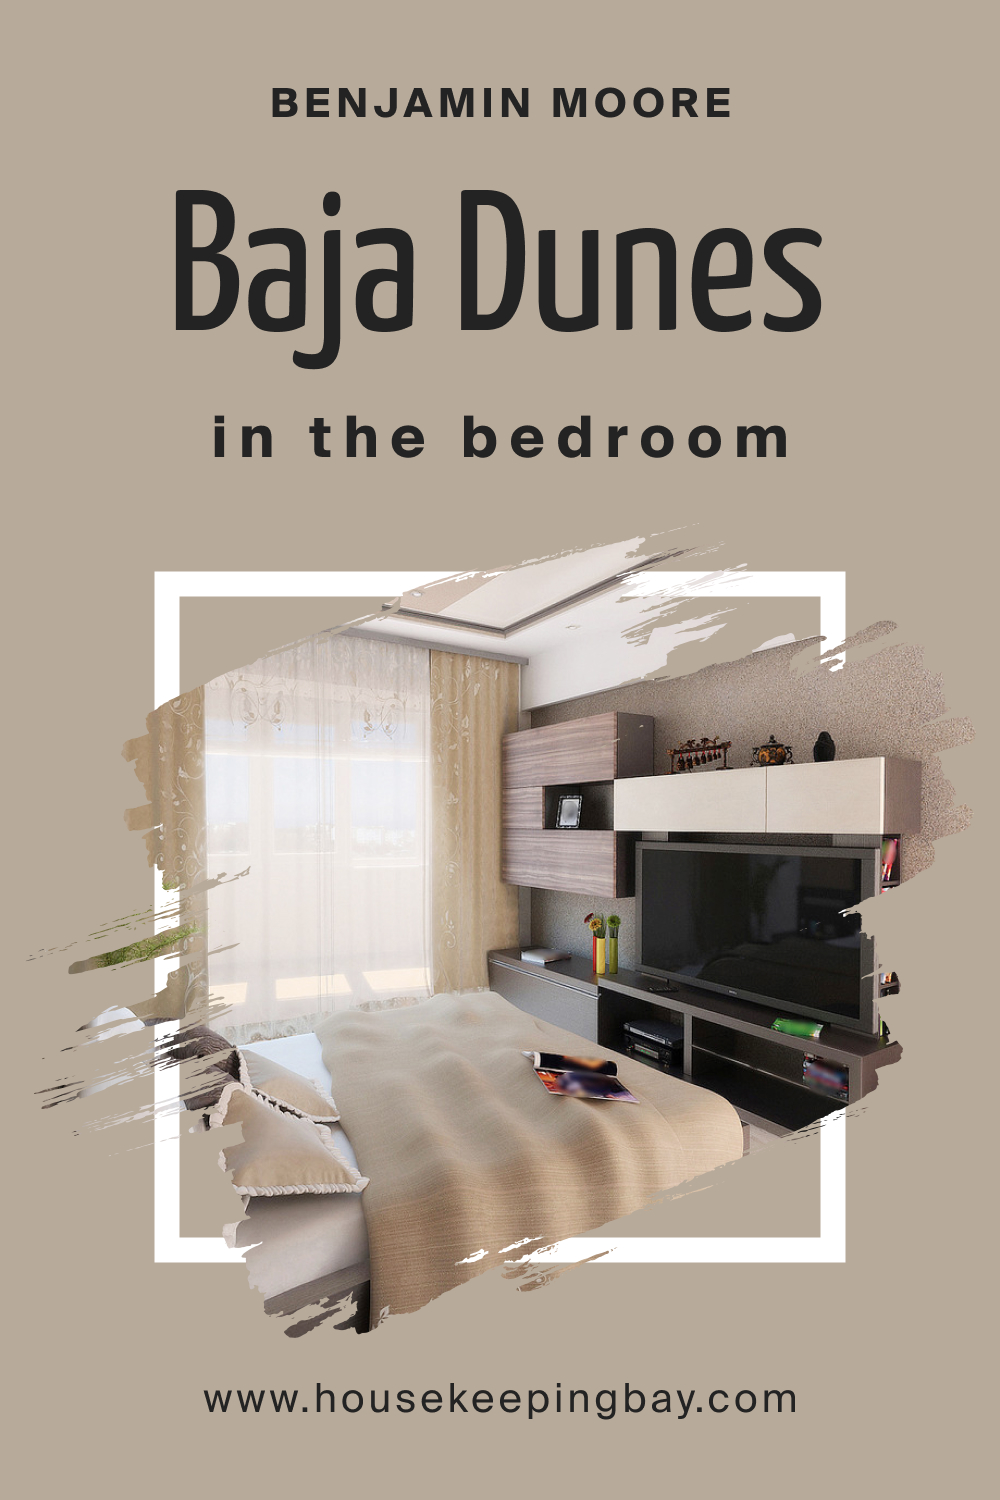 Benjamin Moore. BM Baja Dunes 997 for the Bedroom